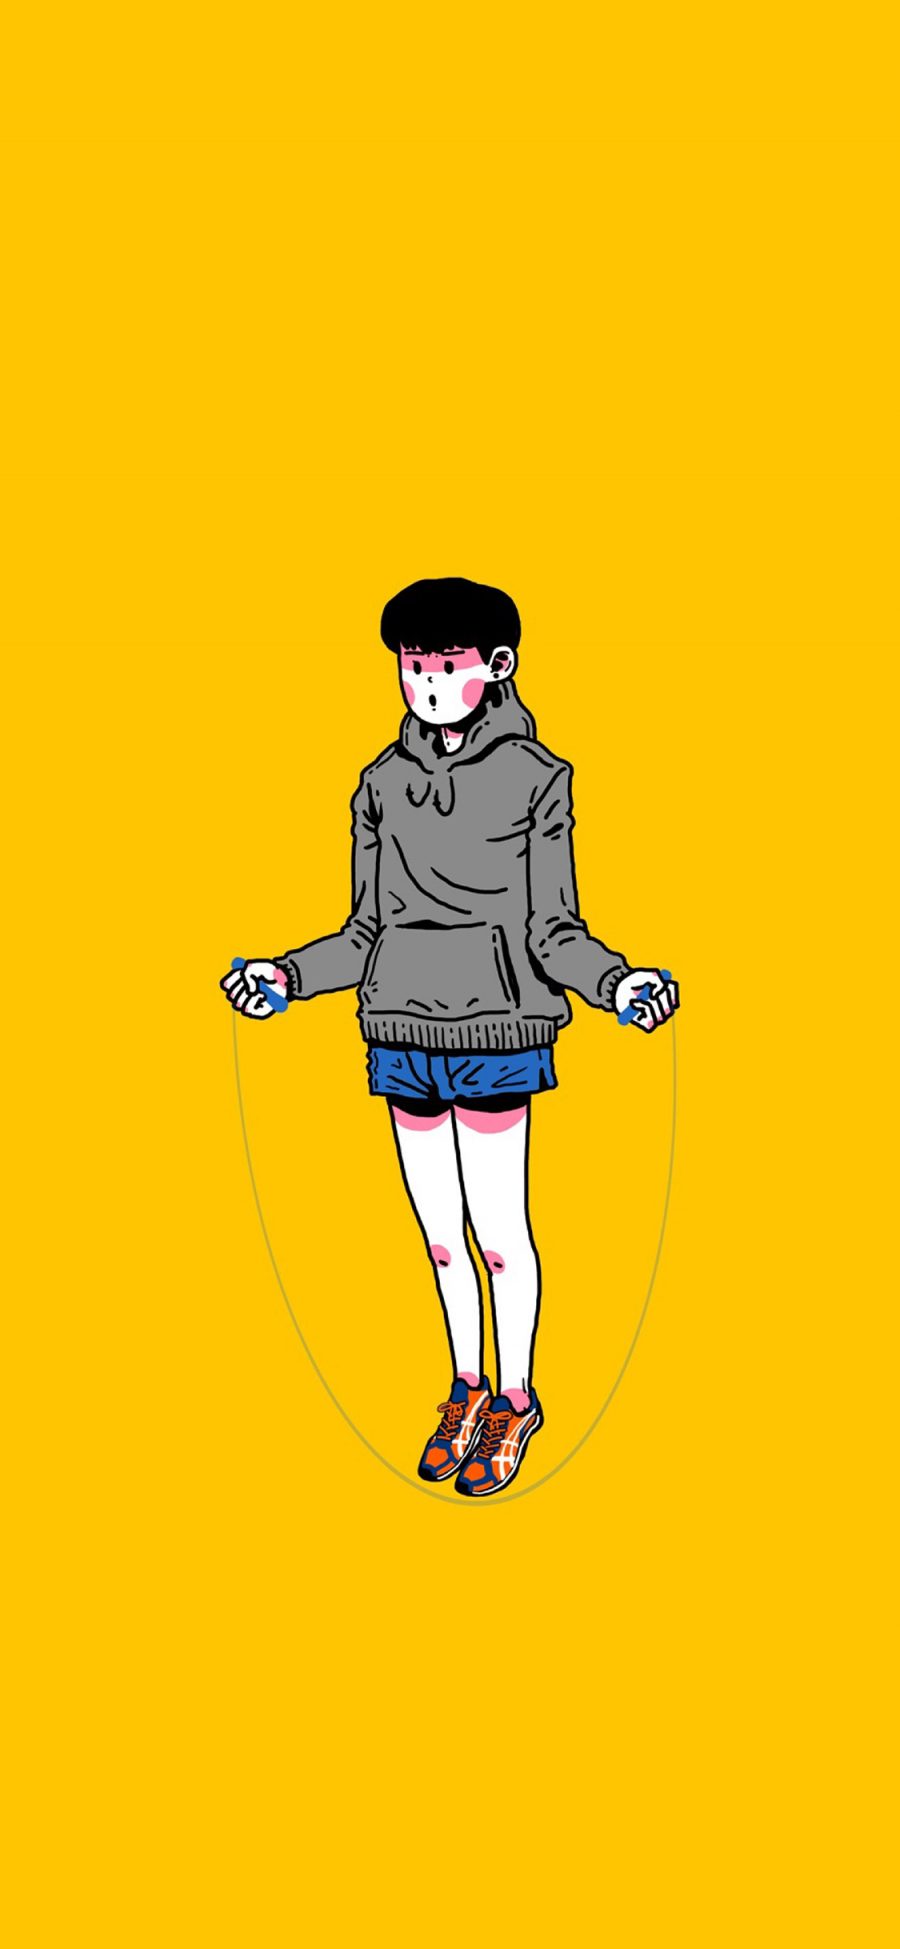 [2436×1125]黄色背景 CJroblue插图 男孩 跳绳 苹果手机动漫壁纸图片